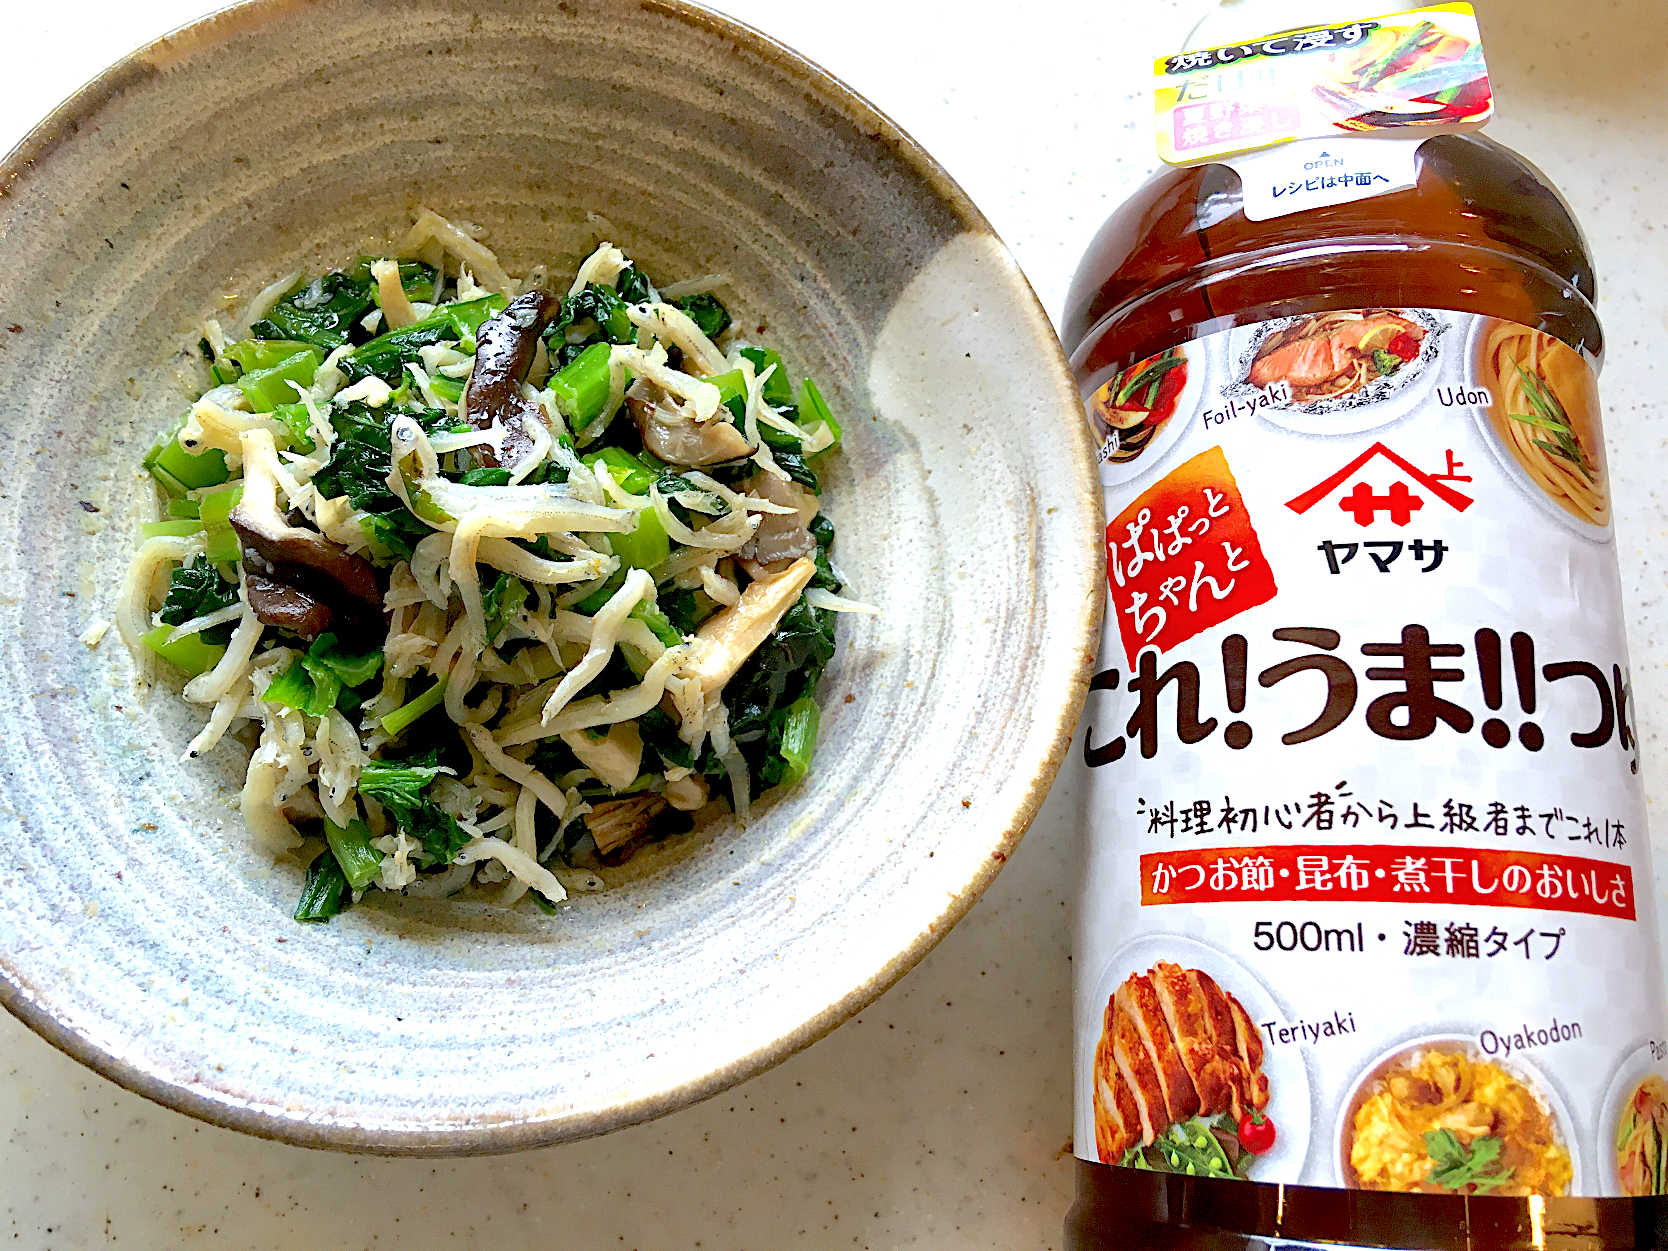 #小松菜 #ヒラタケ #しらす 炒め。これうまつゆだけで美味しい😋